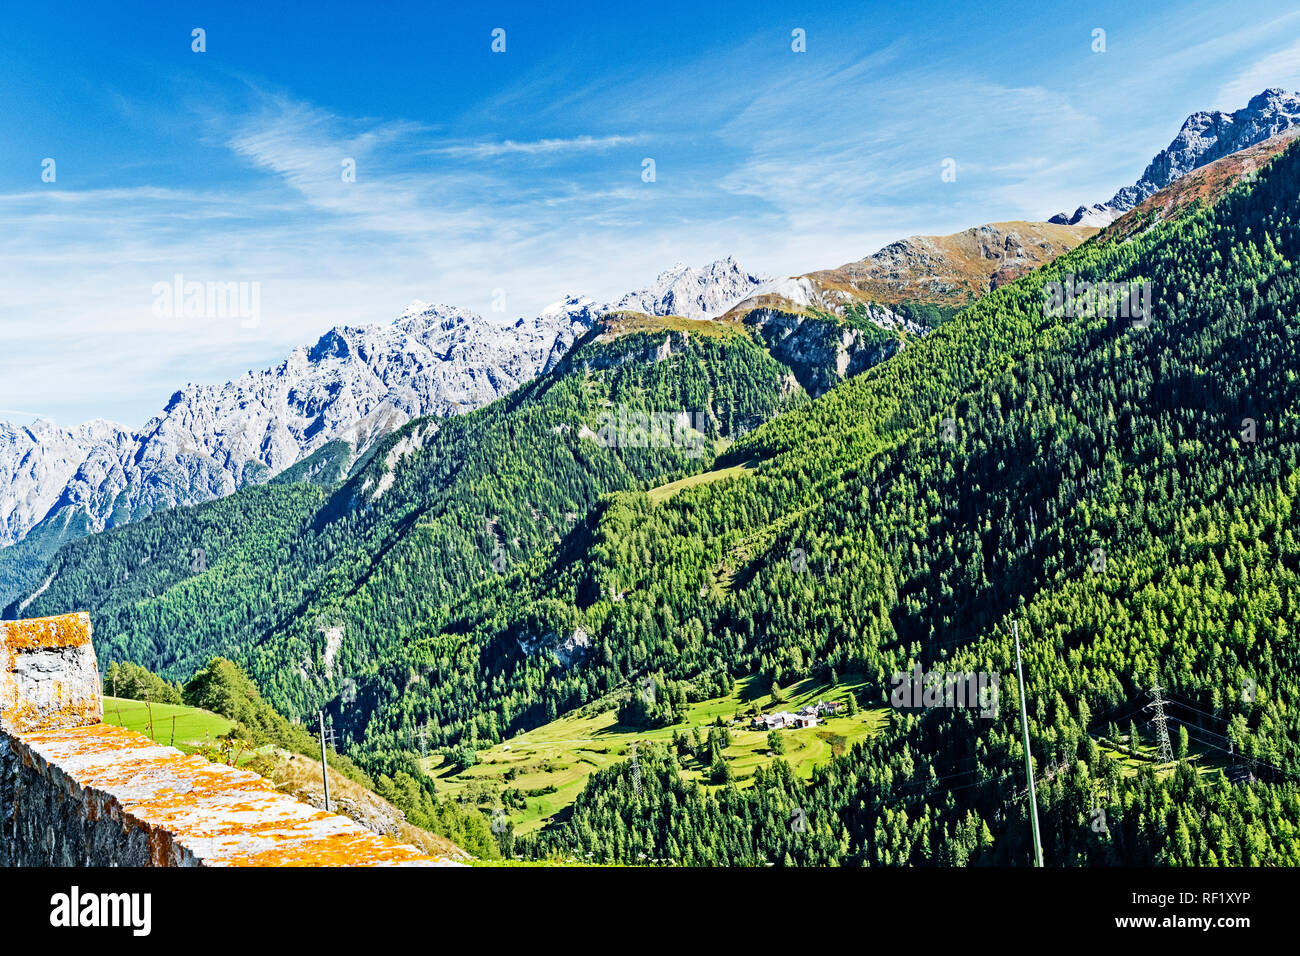 Switzerland: Mountains in autumn; Schweizer Berge im Herbst Stock Photo -  Alamy